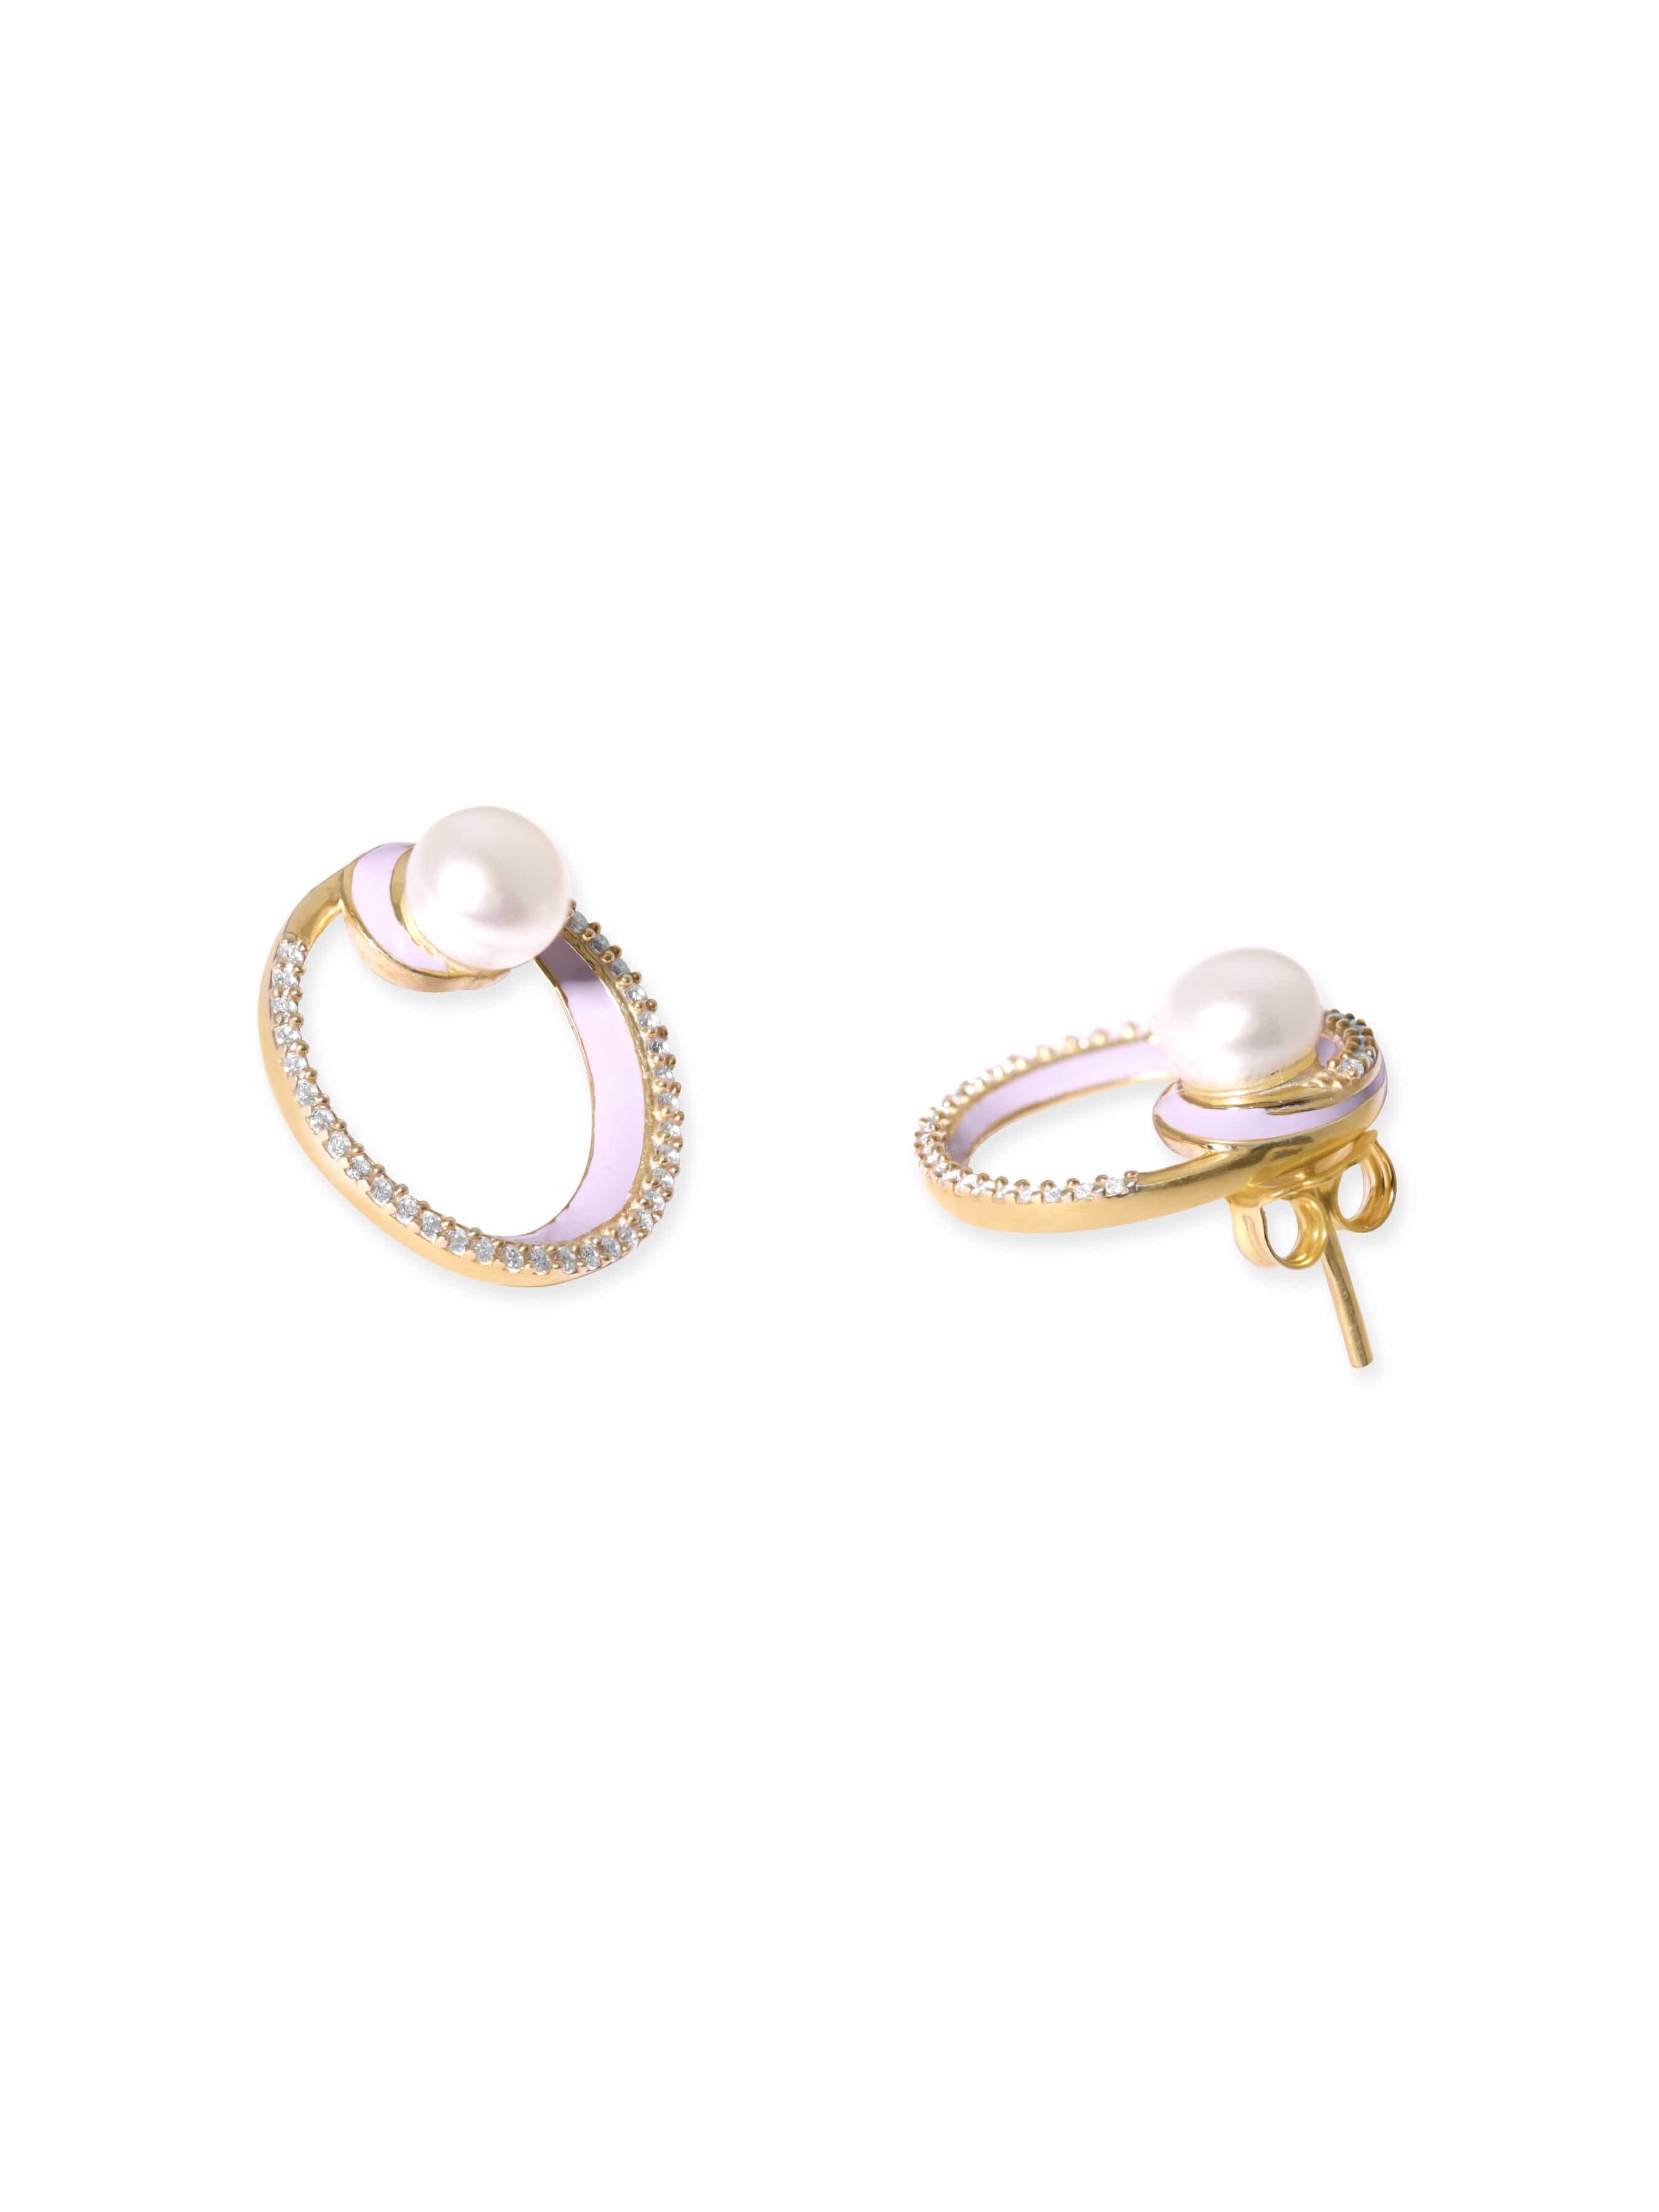 pearl earring|pearl stud|earring pearl|stud pearl|pearl studs|pearl  earrings|pearl stud earring|women pearl earring|women pearl